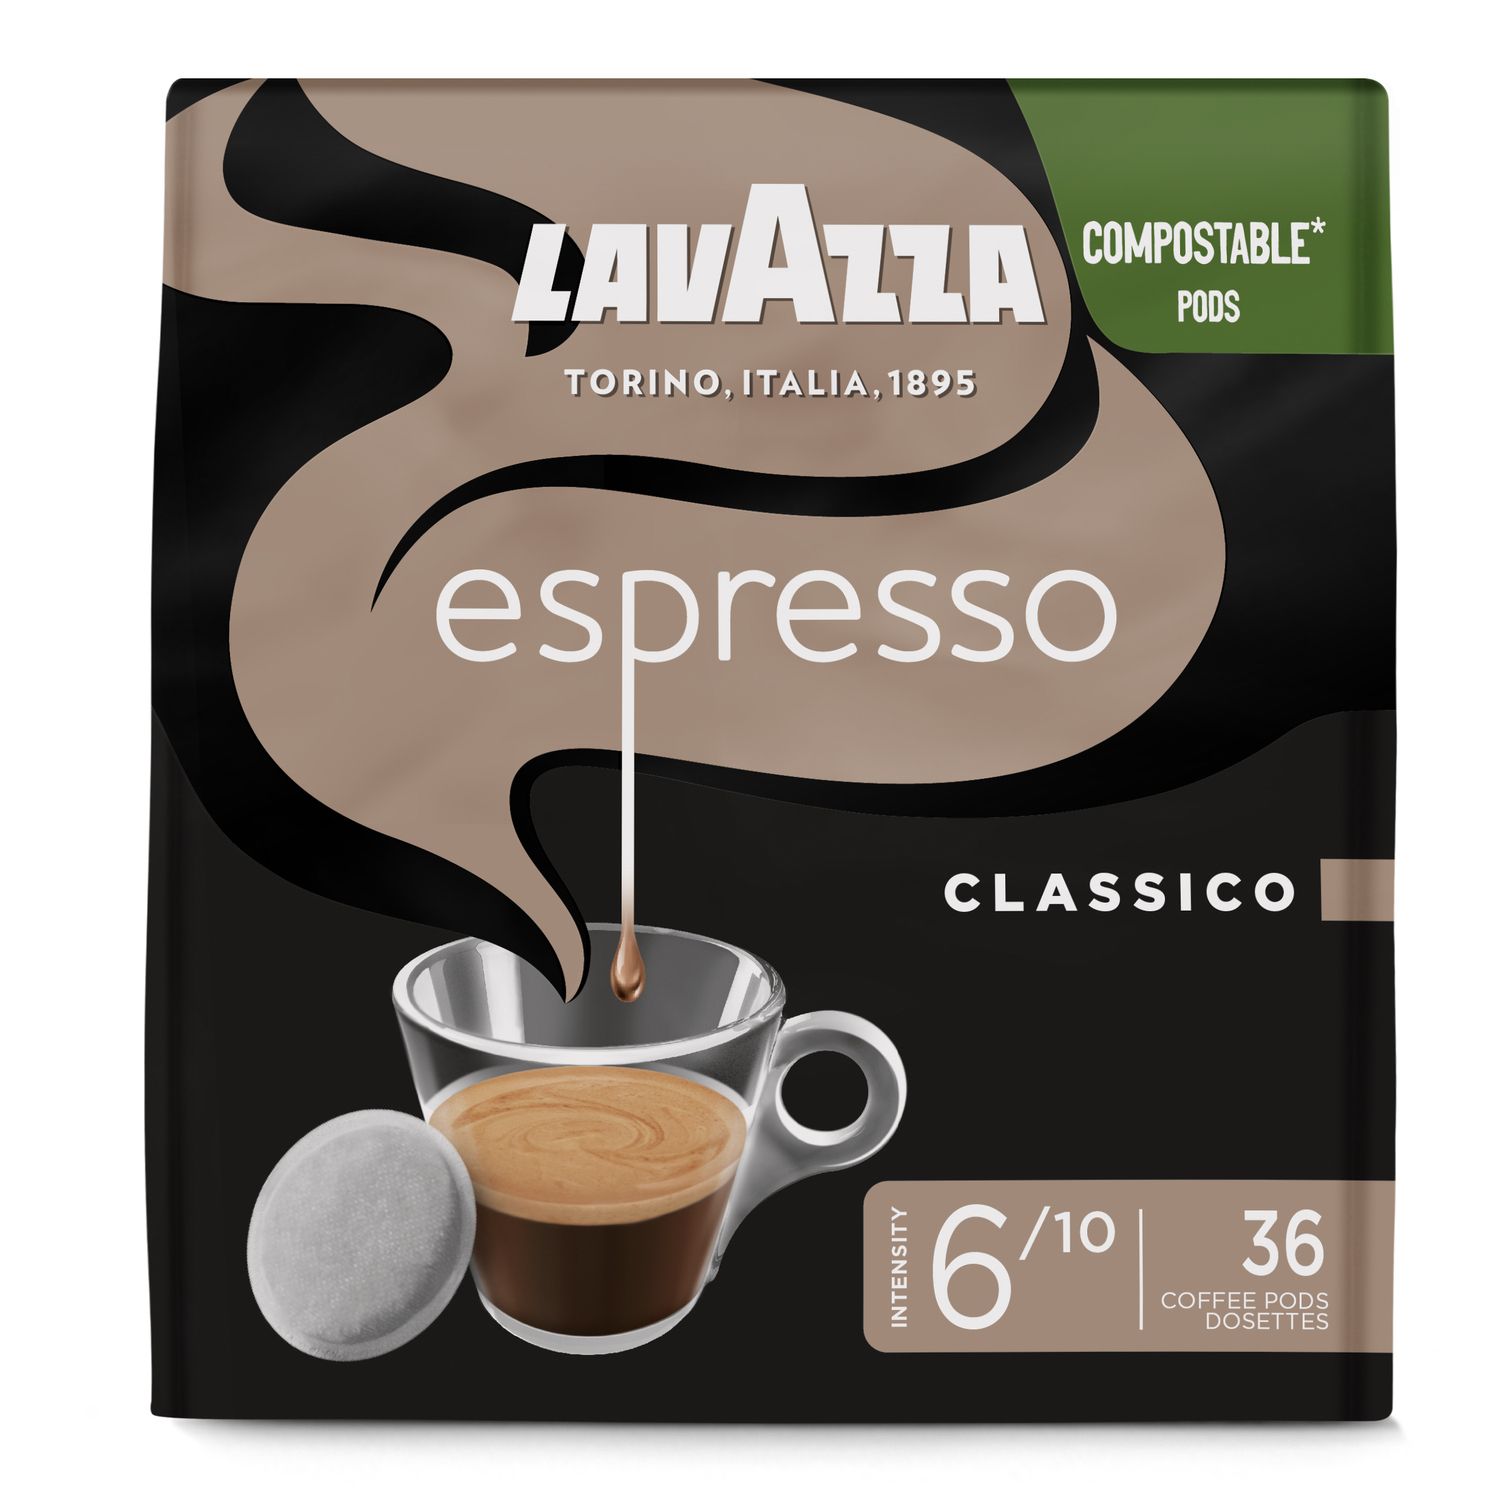 Café moulu espresso décaféiné Lavazza